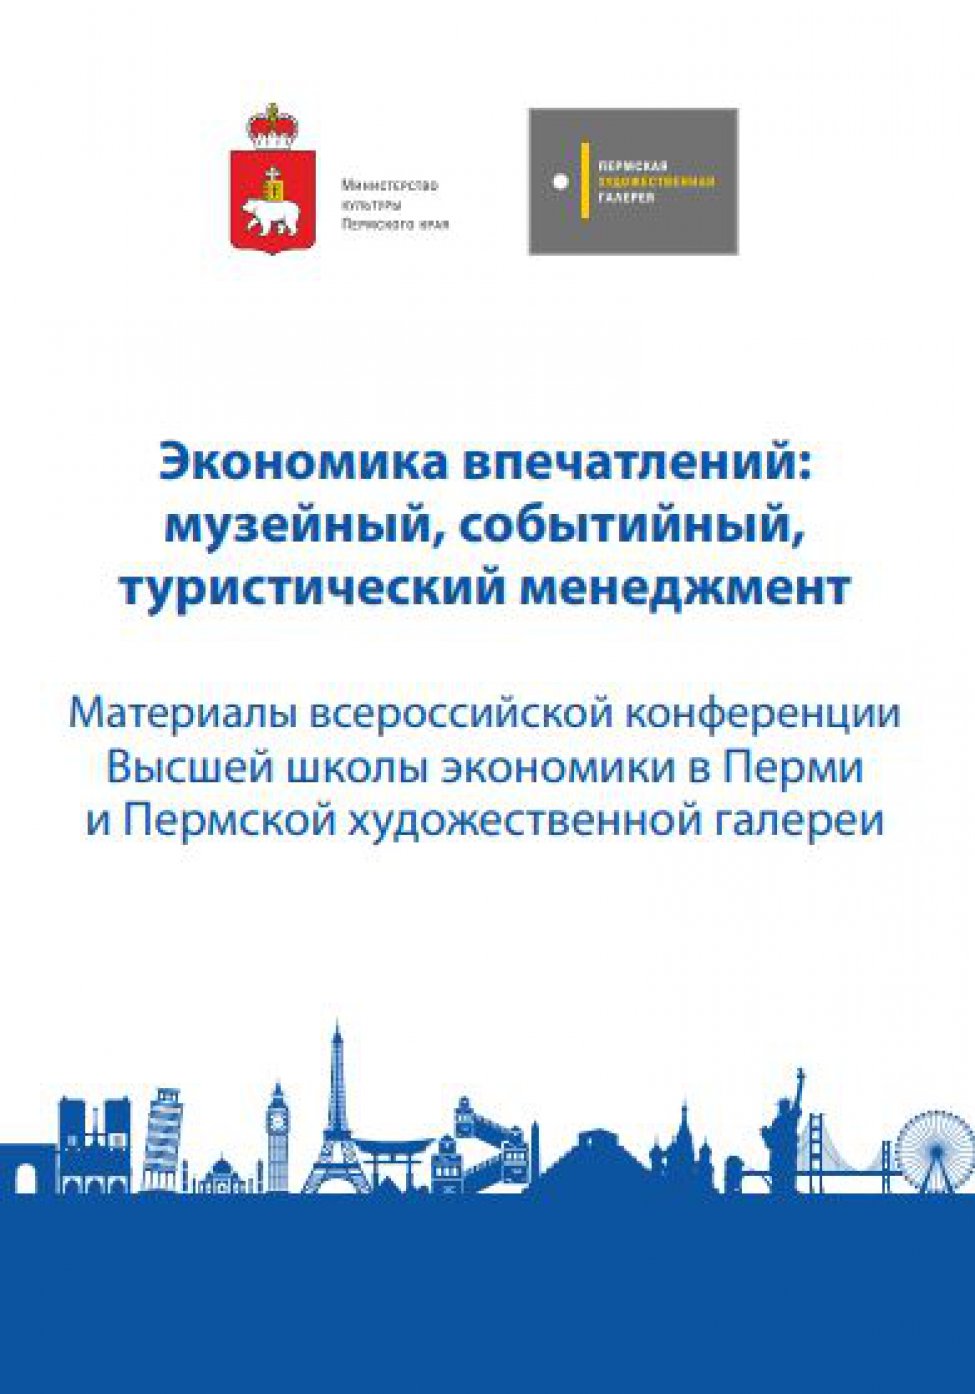 Материалы всероссийской конференции Экономика впечатлений: музейный, событийный, туристический менеджмент